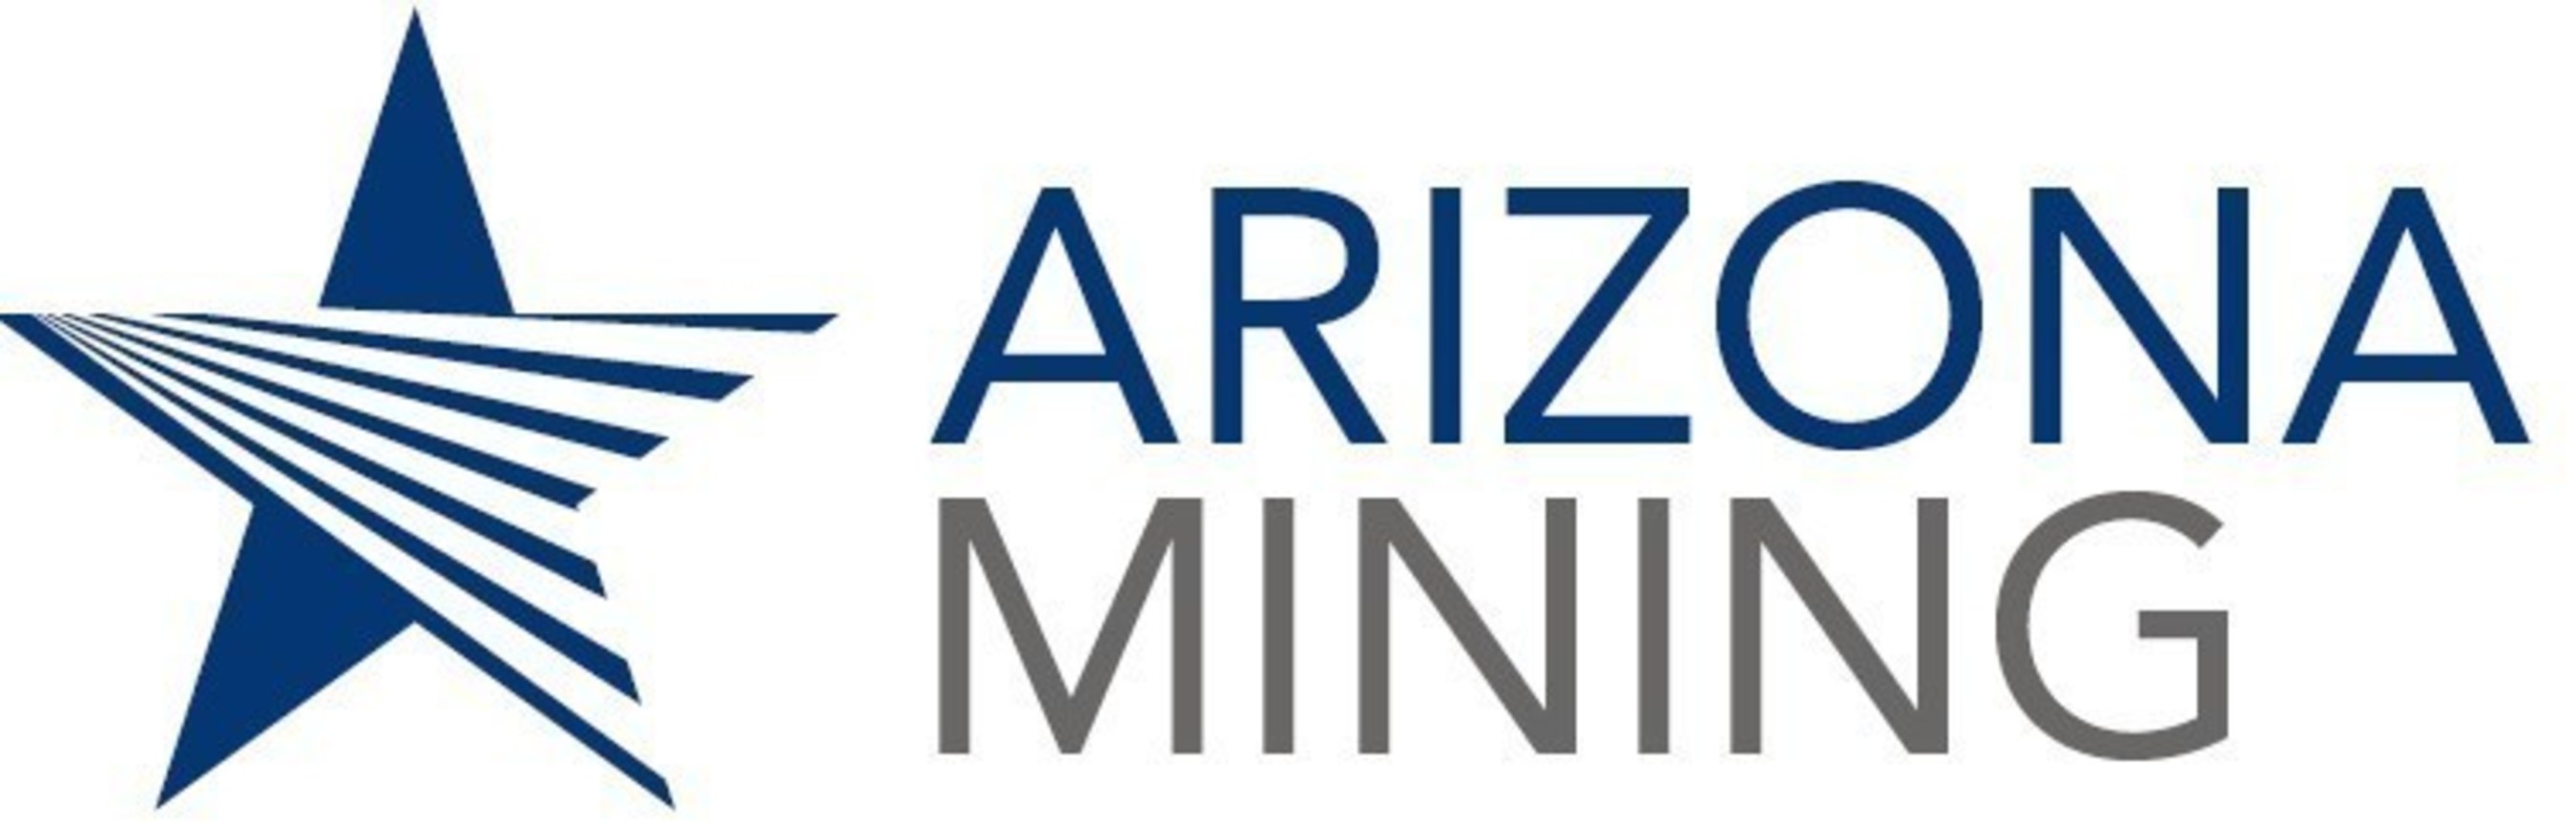 Arizona Mining Logo